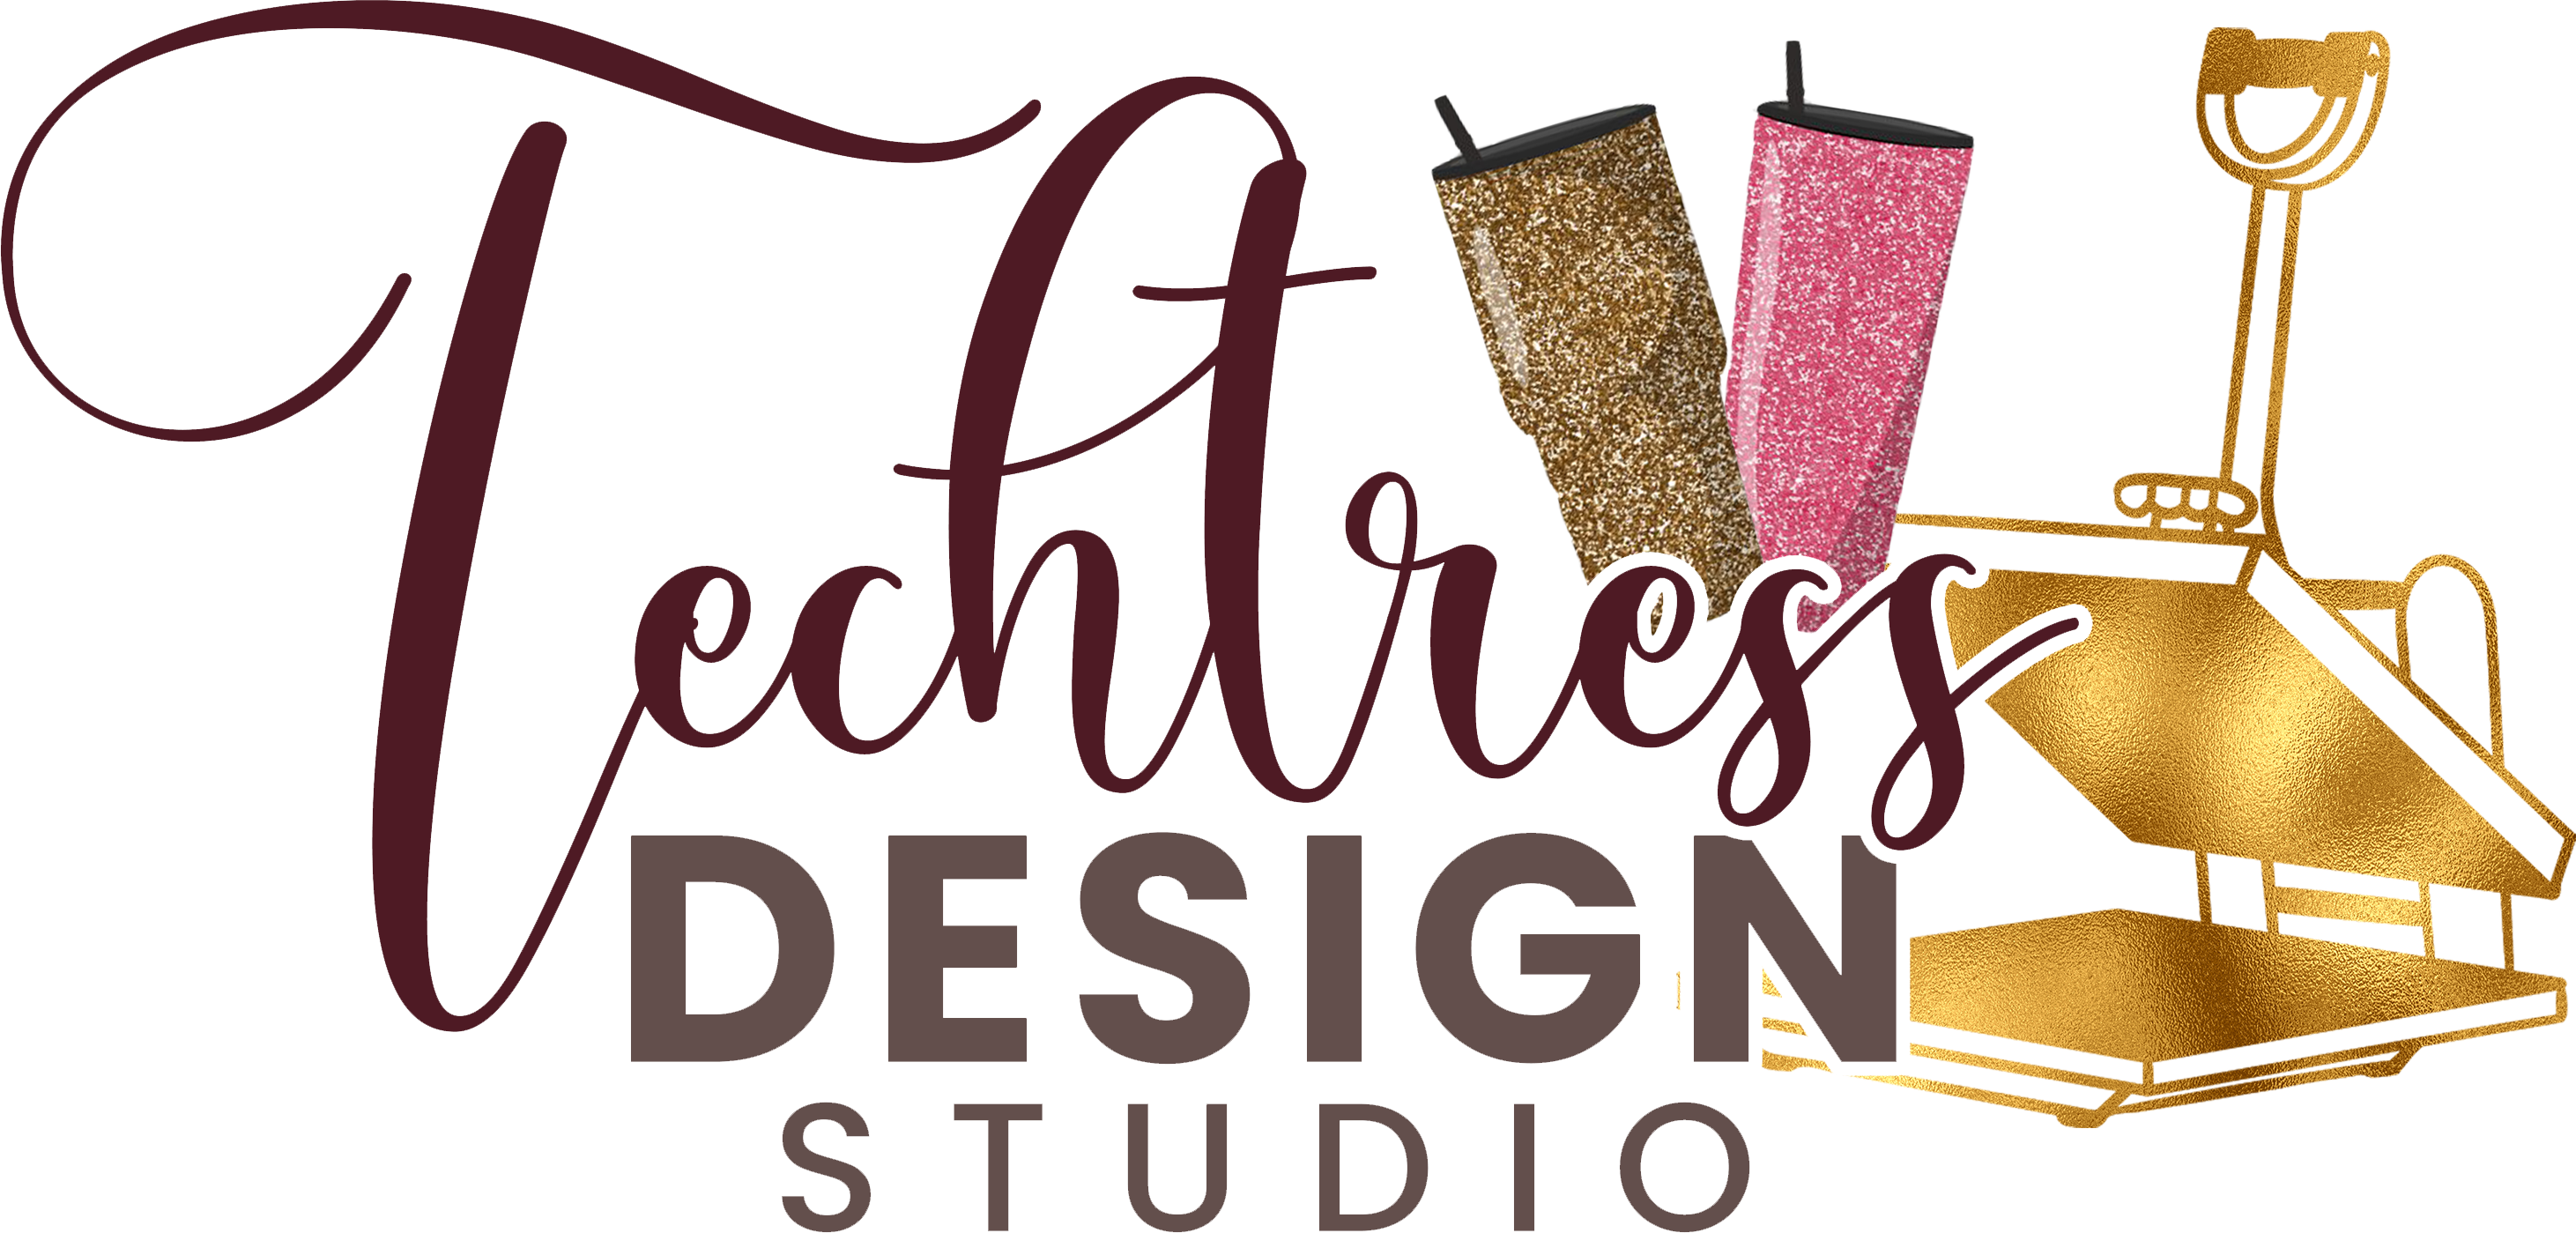 Techtress Design Studio